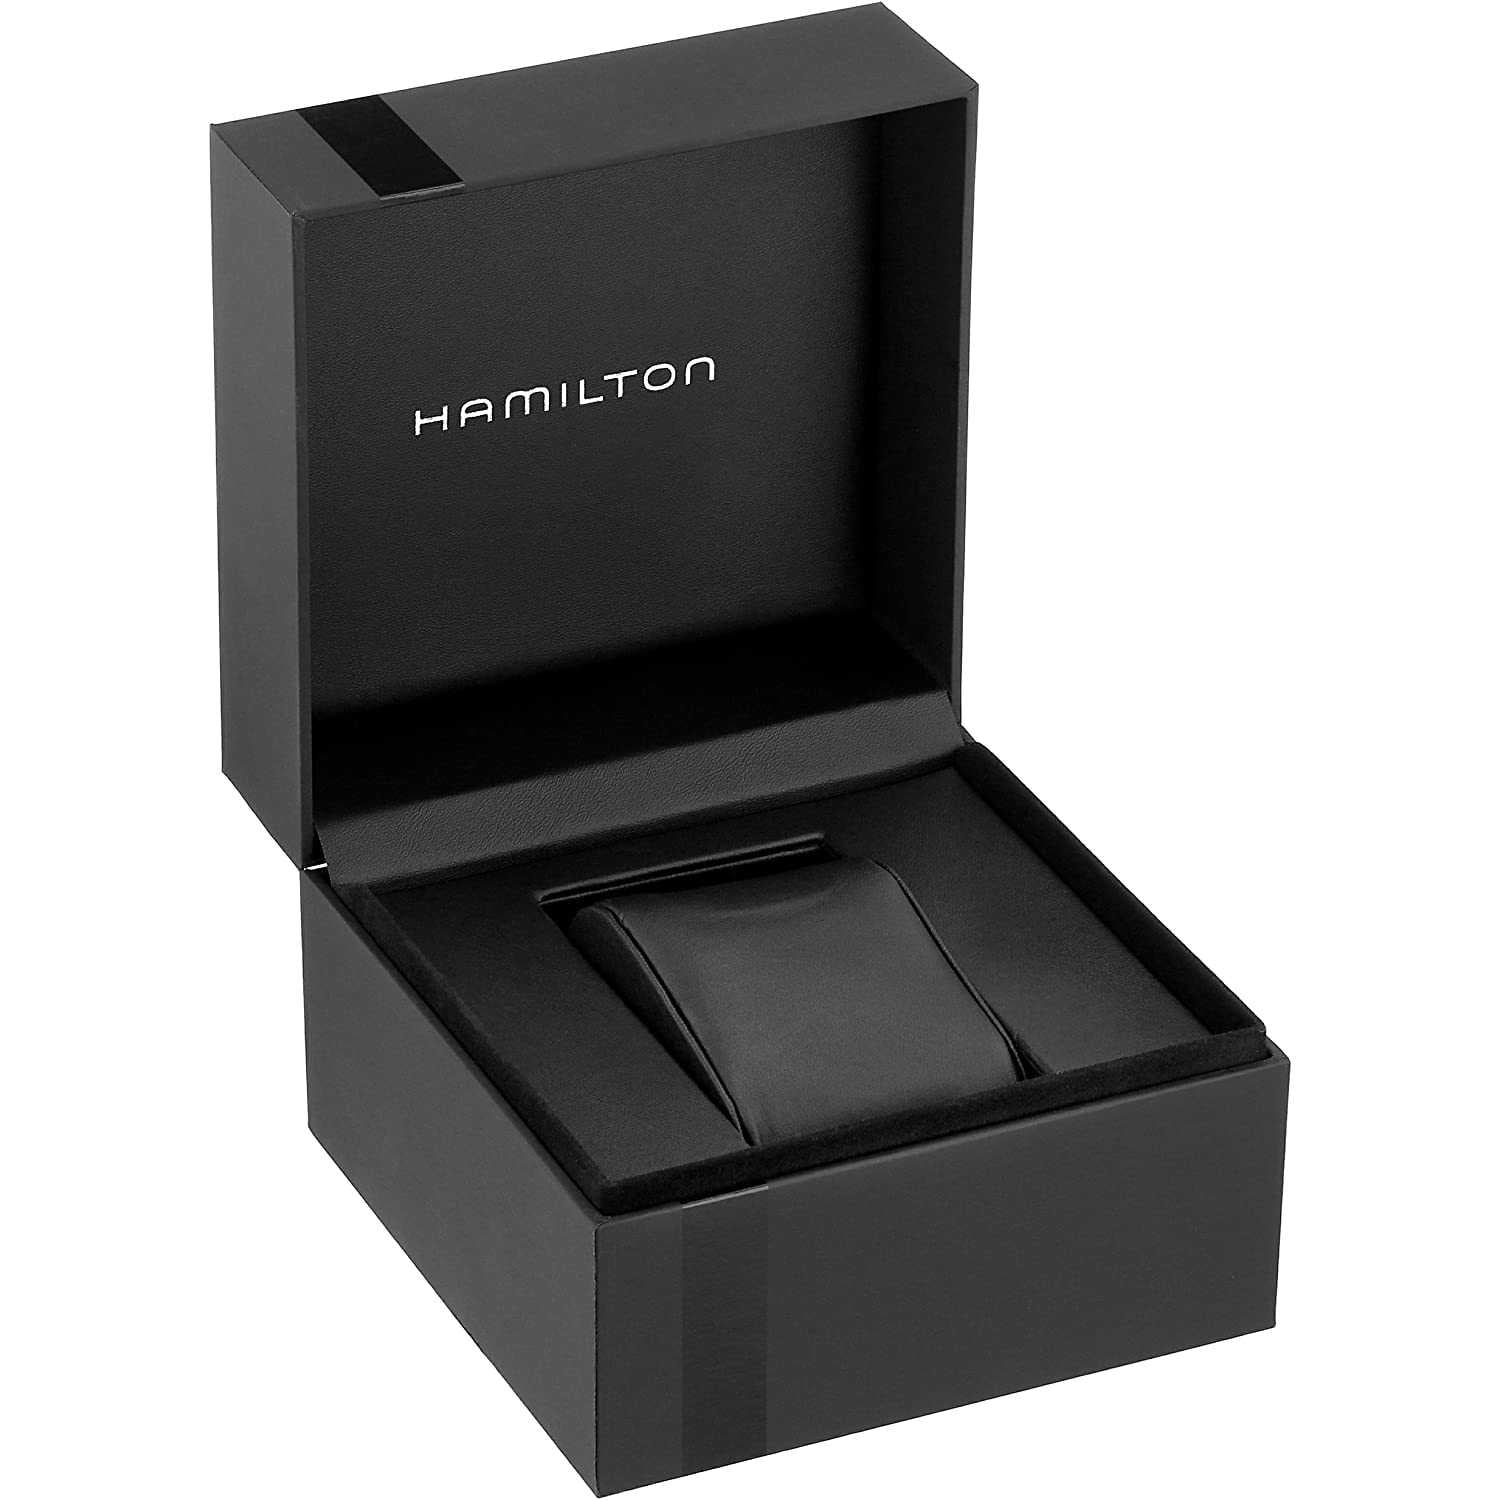 Hamilton H70515137 - Orologio da polso da uomo acciaio inox